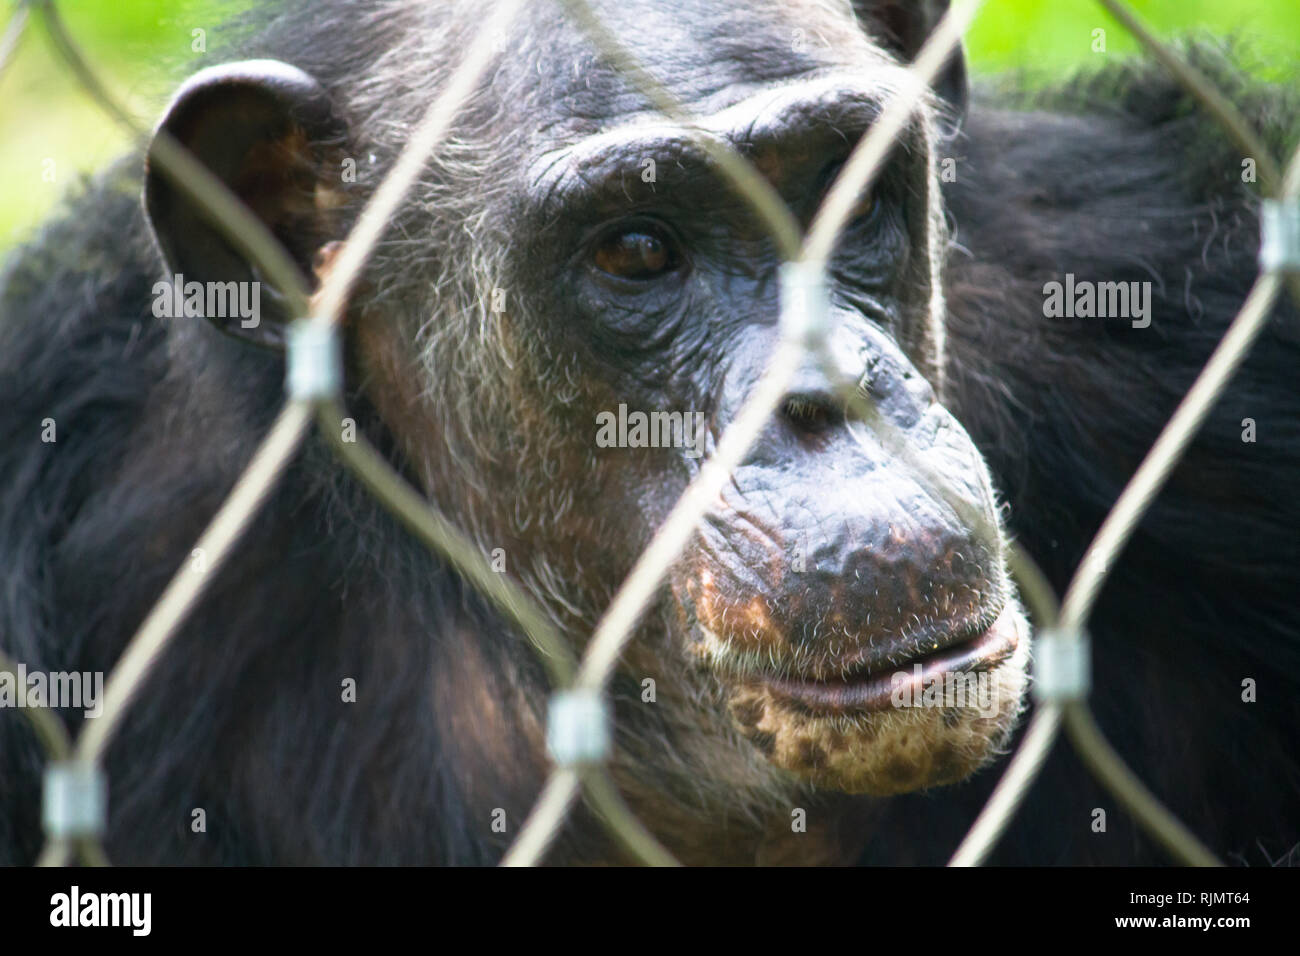 Seul chimpanzé face portrait derrière la grille suivante protection ou de  bars dans un parc du zoo, apparemment dans un triste pensive expression  faciale et contre un livre vert sur Photo Stock -